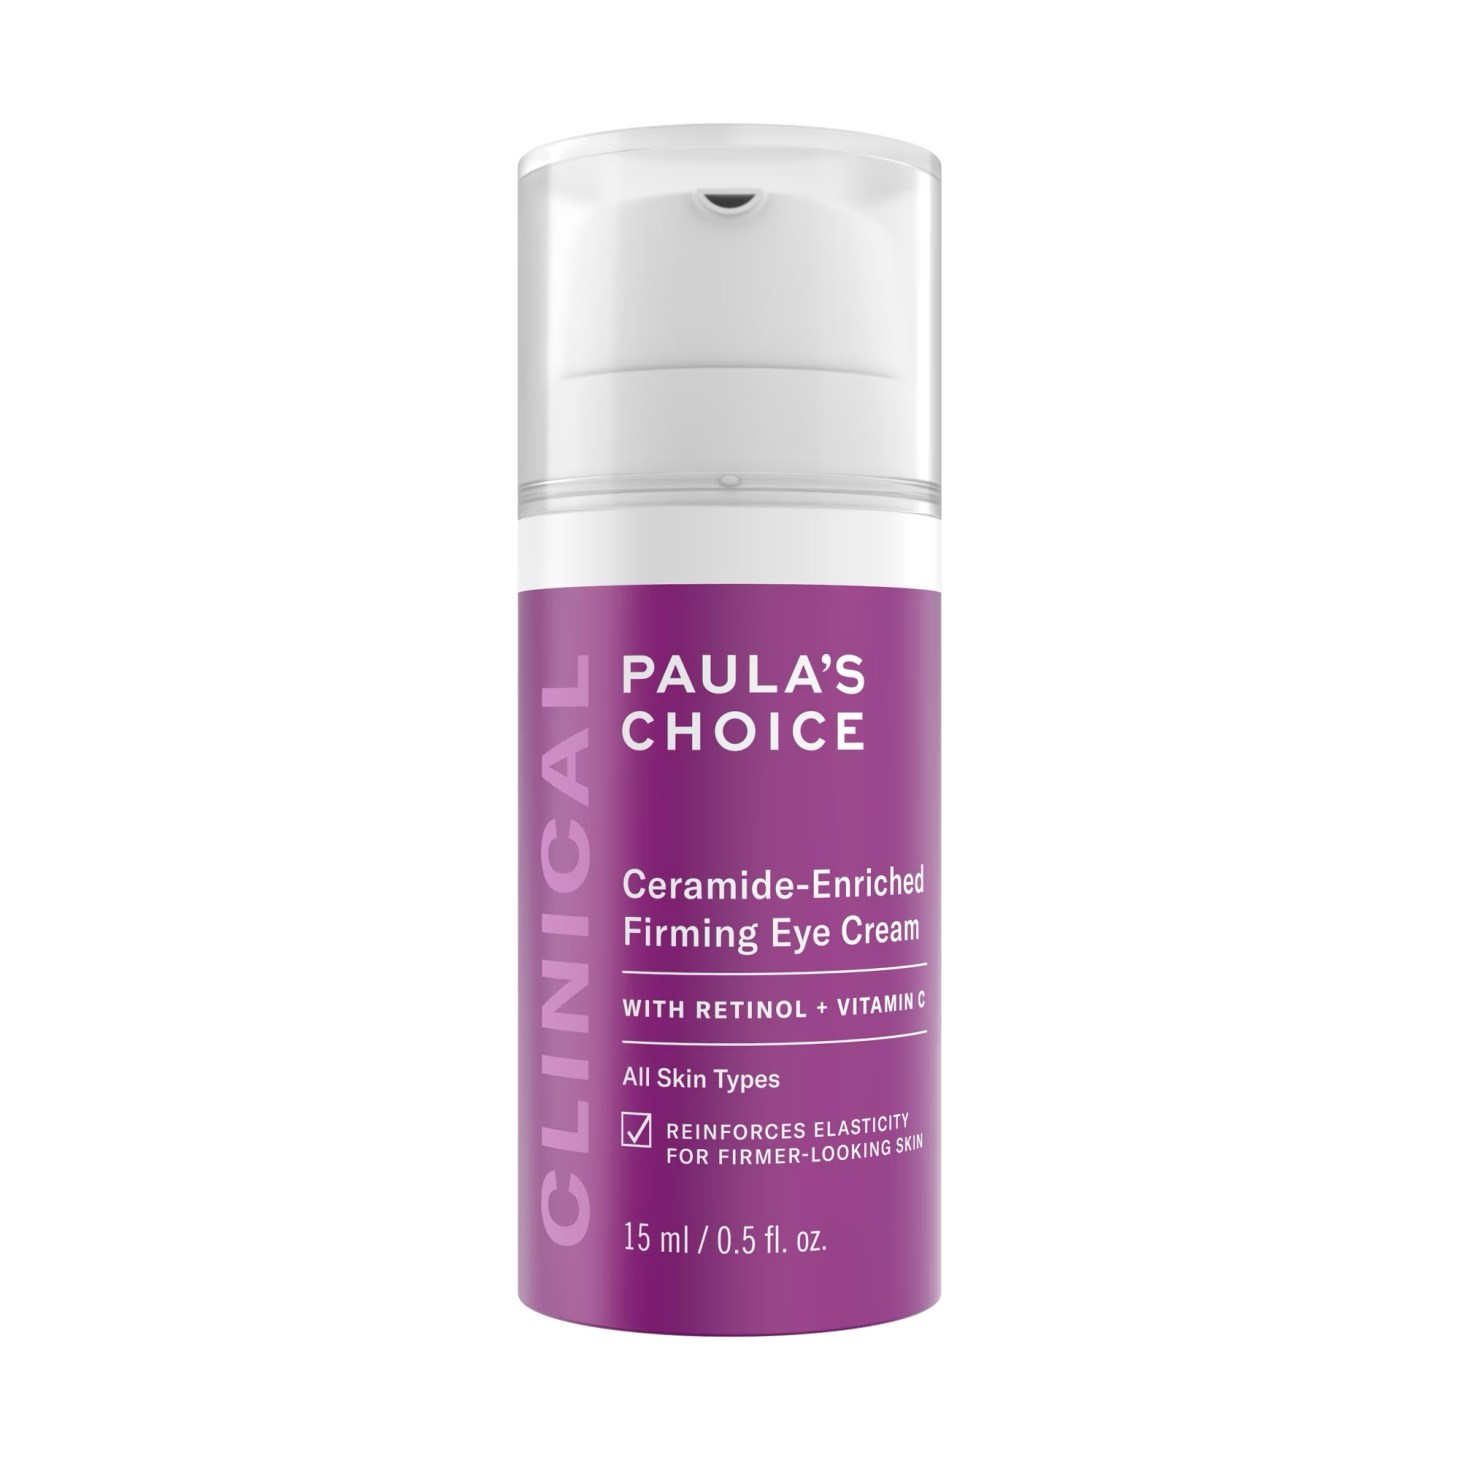 Paula’s Choice Clinical Ceramide Firming Eye Cream